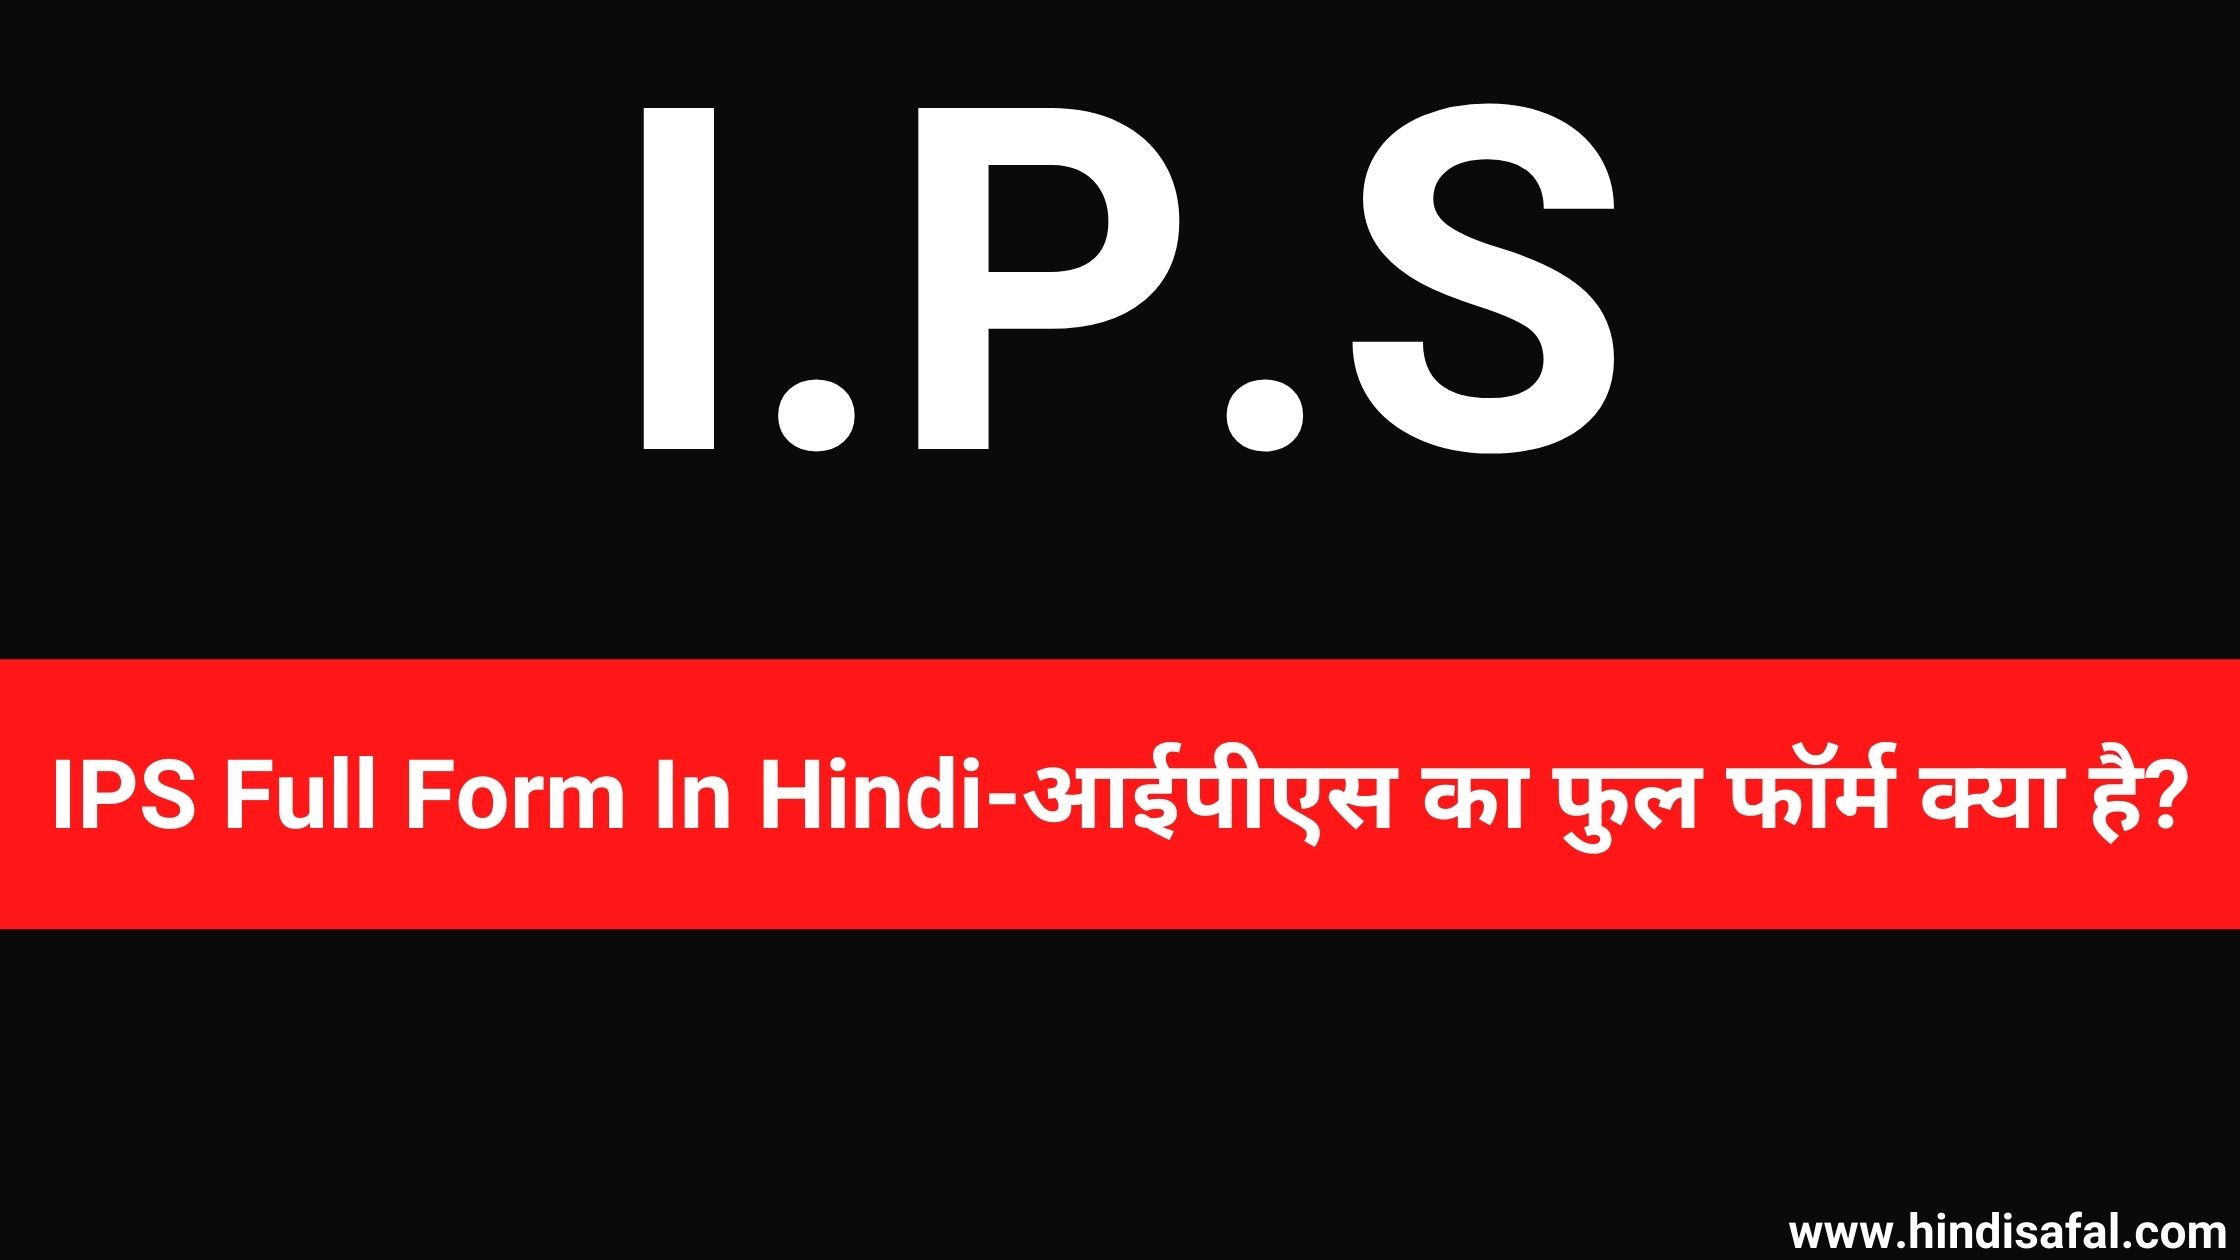 IPS Full Form In Hindi-आईपीएस का फुल फॉर्म क्या है?